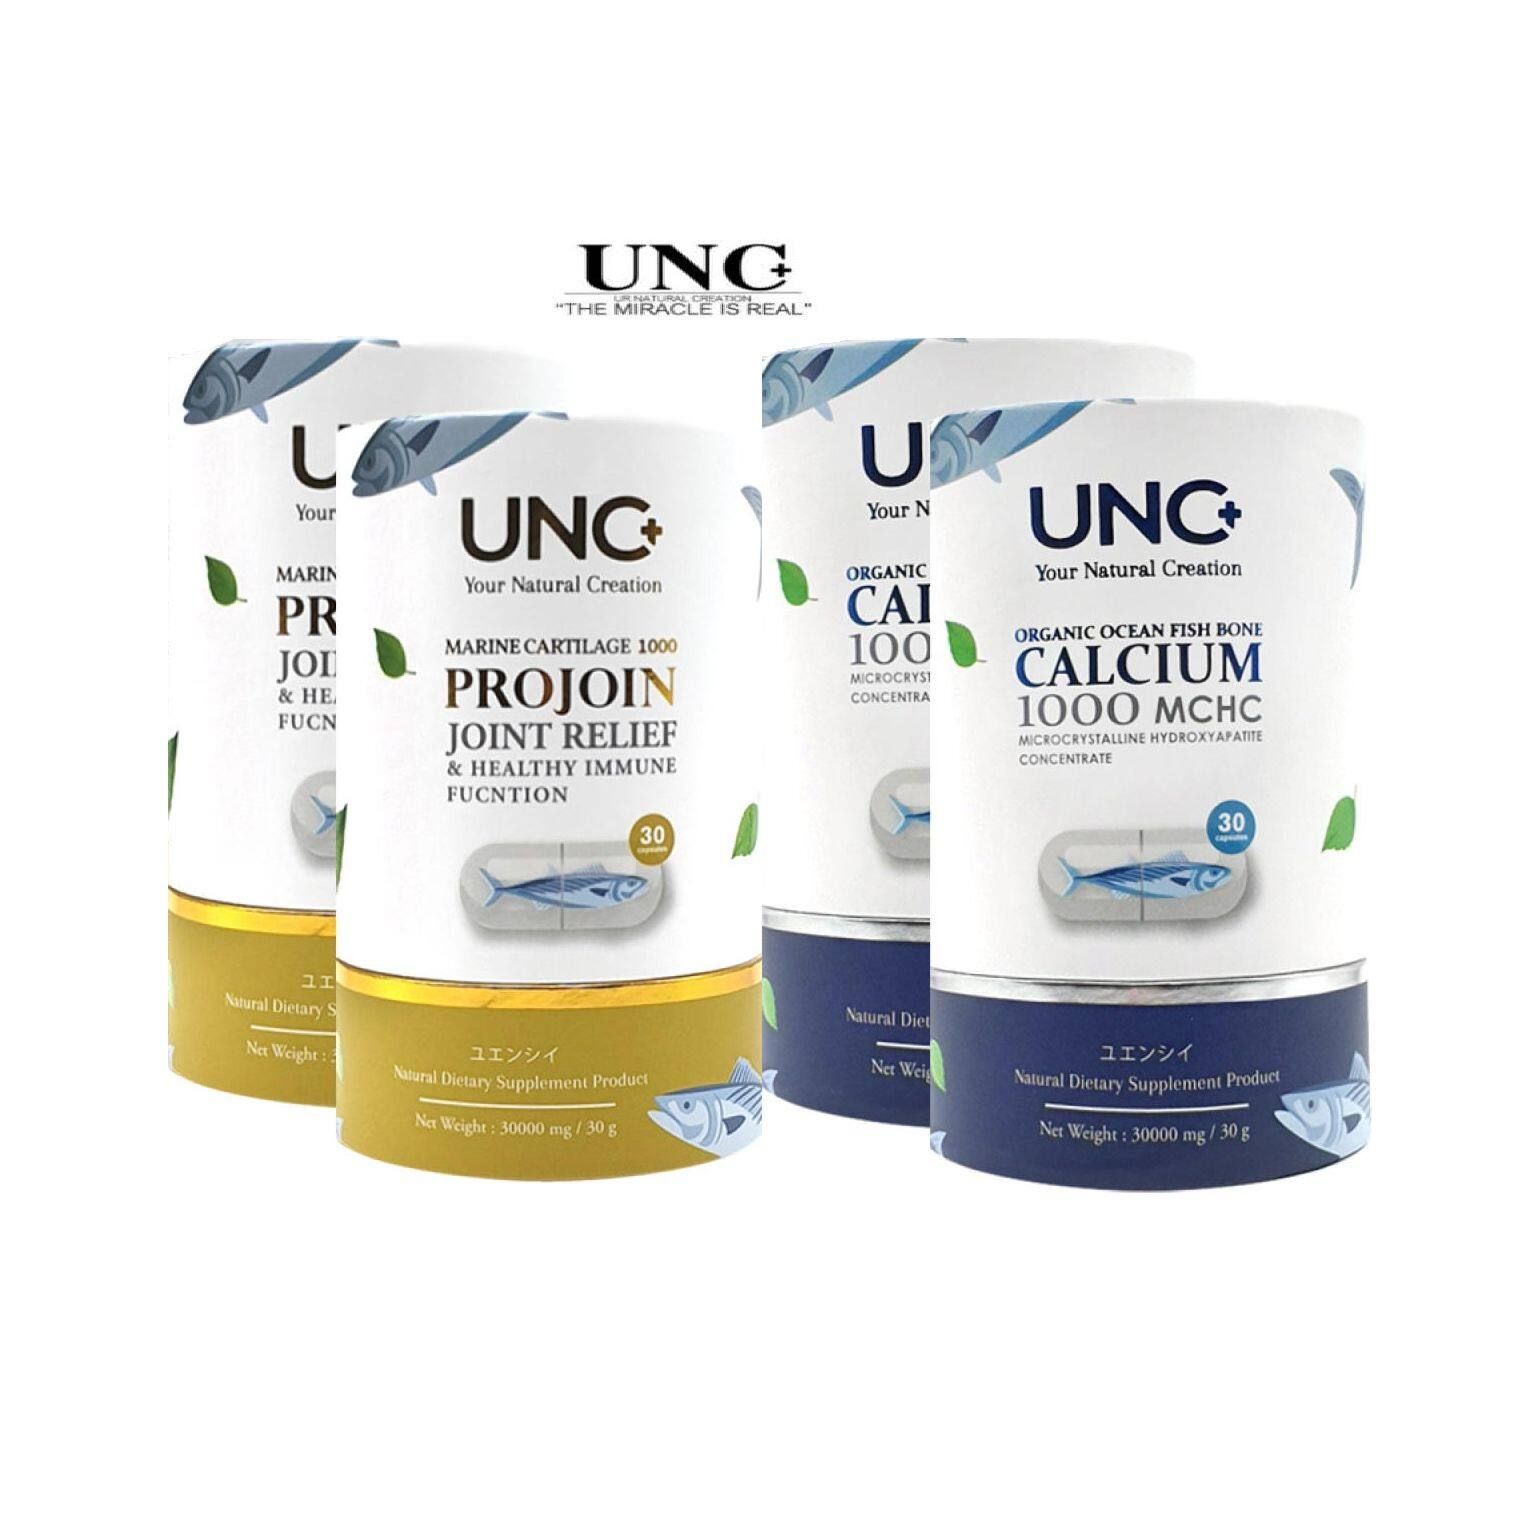 (ส่งฟรี KERRY) UNC Calcium แคลเซียมช่วยฟื้นฟูและบรรเทากระดูกบาง และกระดูกพรุน ( 2 กระปุก 60 แคปซูล ) + UNC Projoin คอลลาเจนไตรเปปไทด์ และกระดูกอ่อนปลา